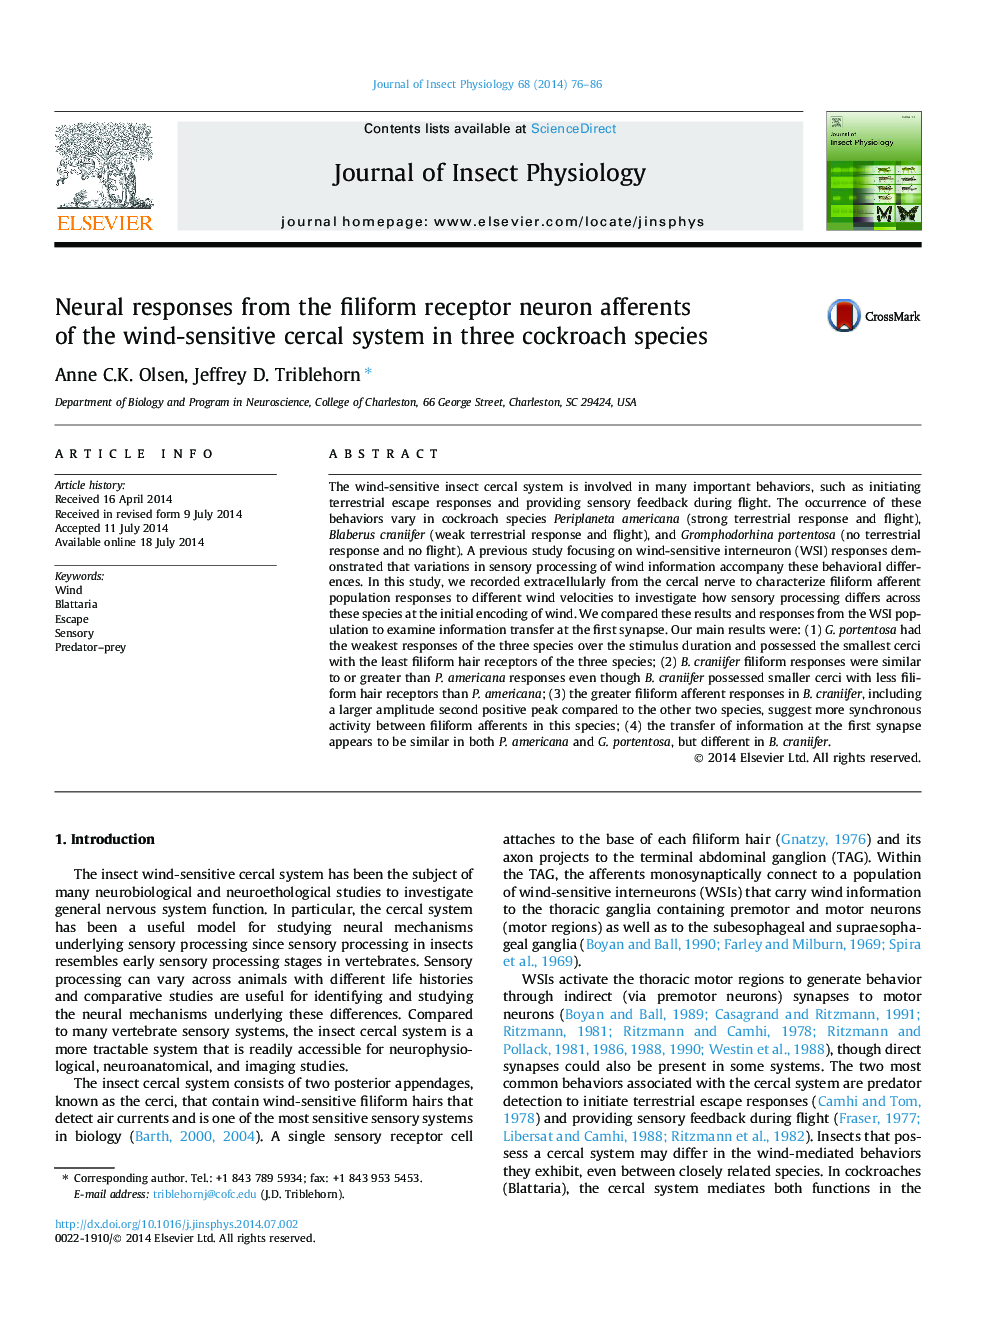 پاسخ های عصبی از عصب گیرنده های گیرنده فیلتری در سیستم حساس باد حساس در سه گونه سوسک 